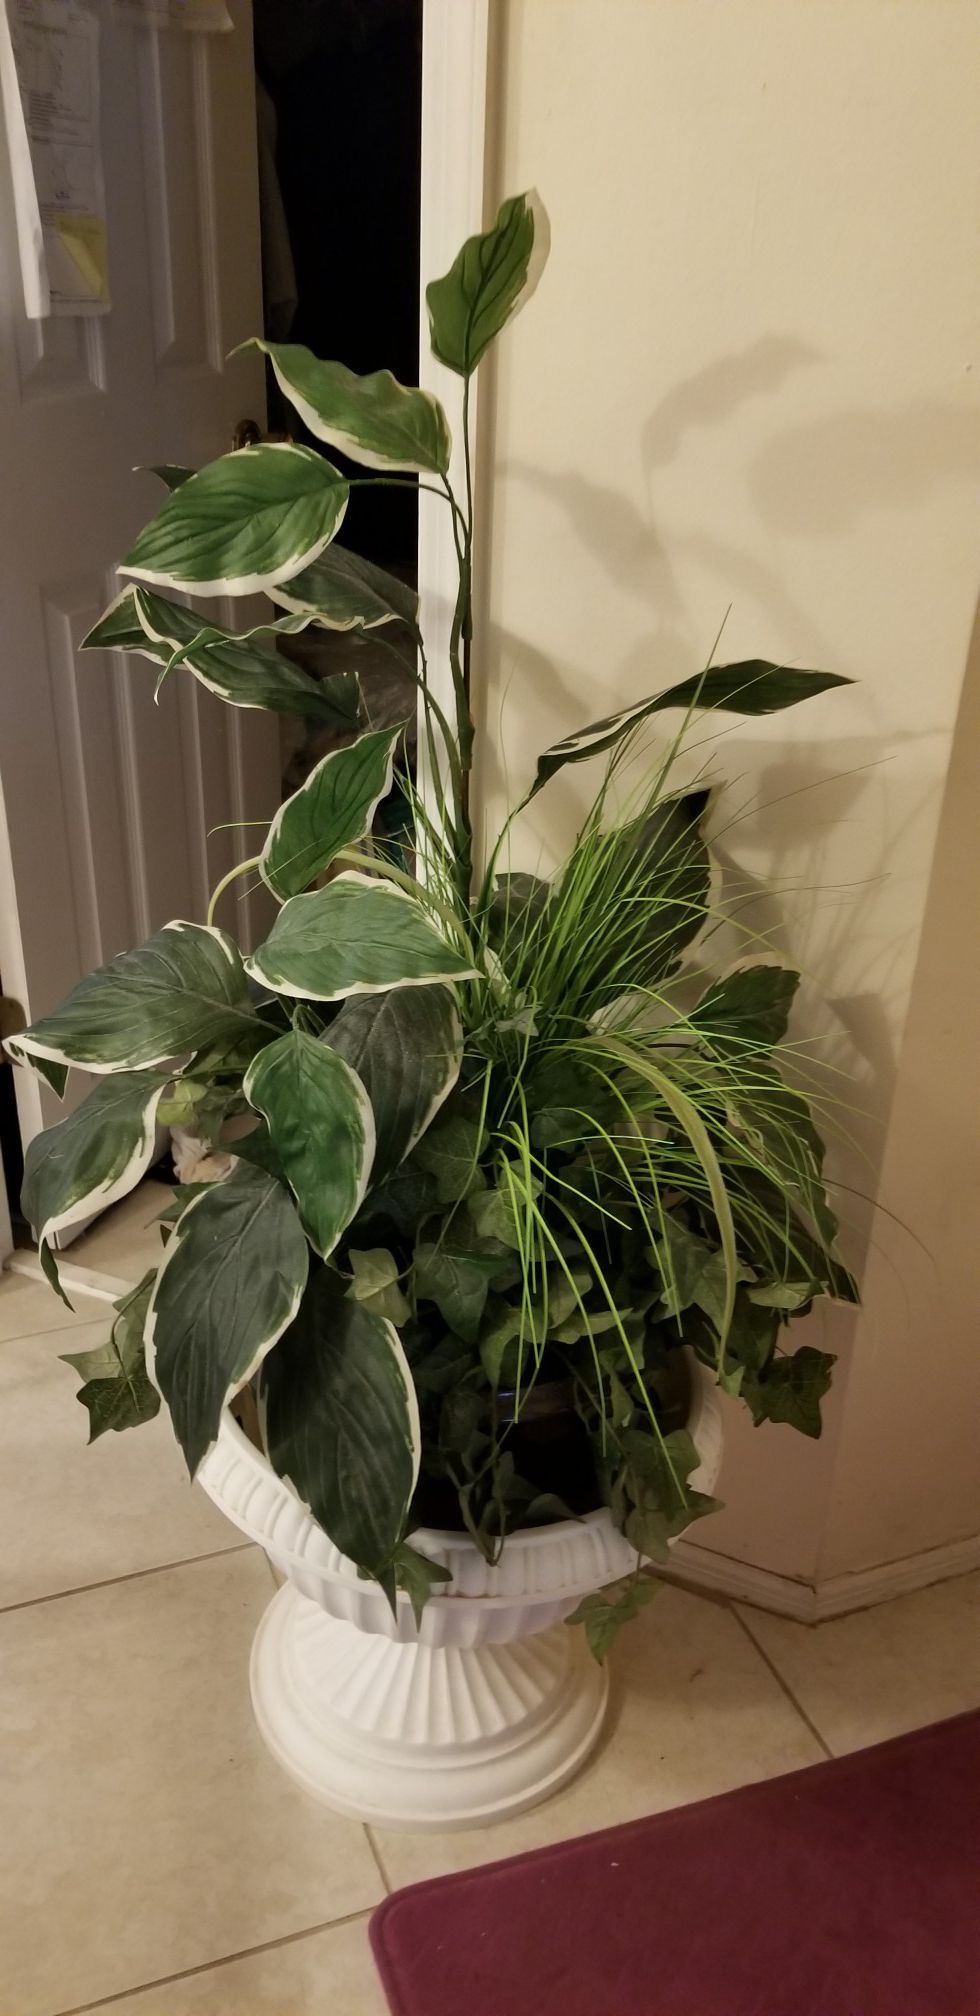 $5 Artificial House Plants